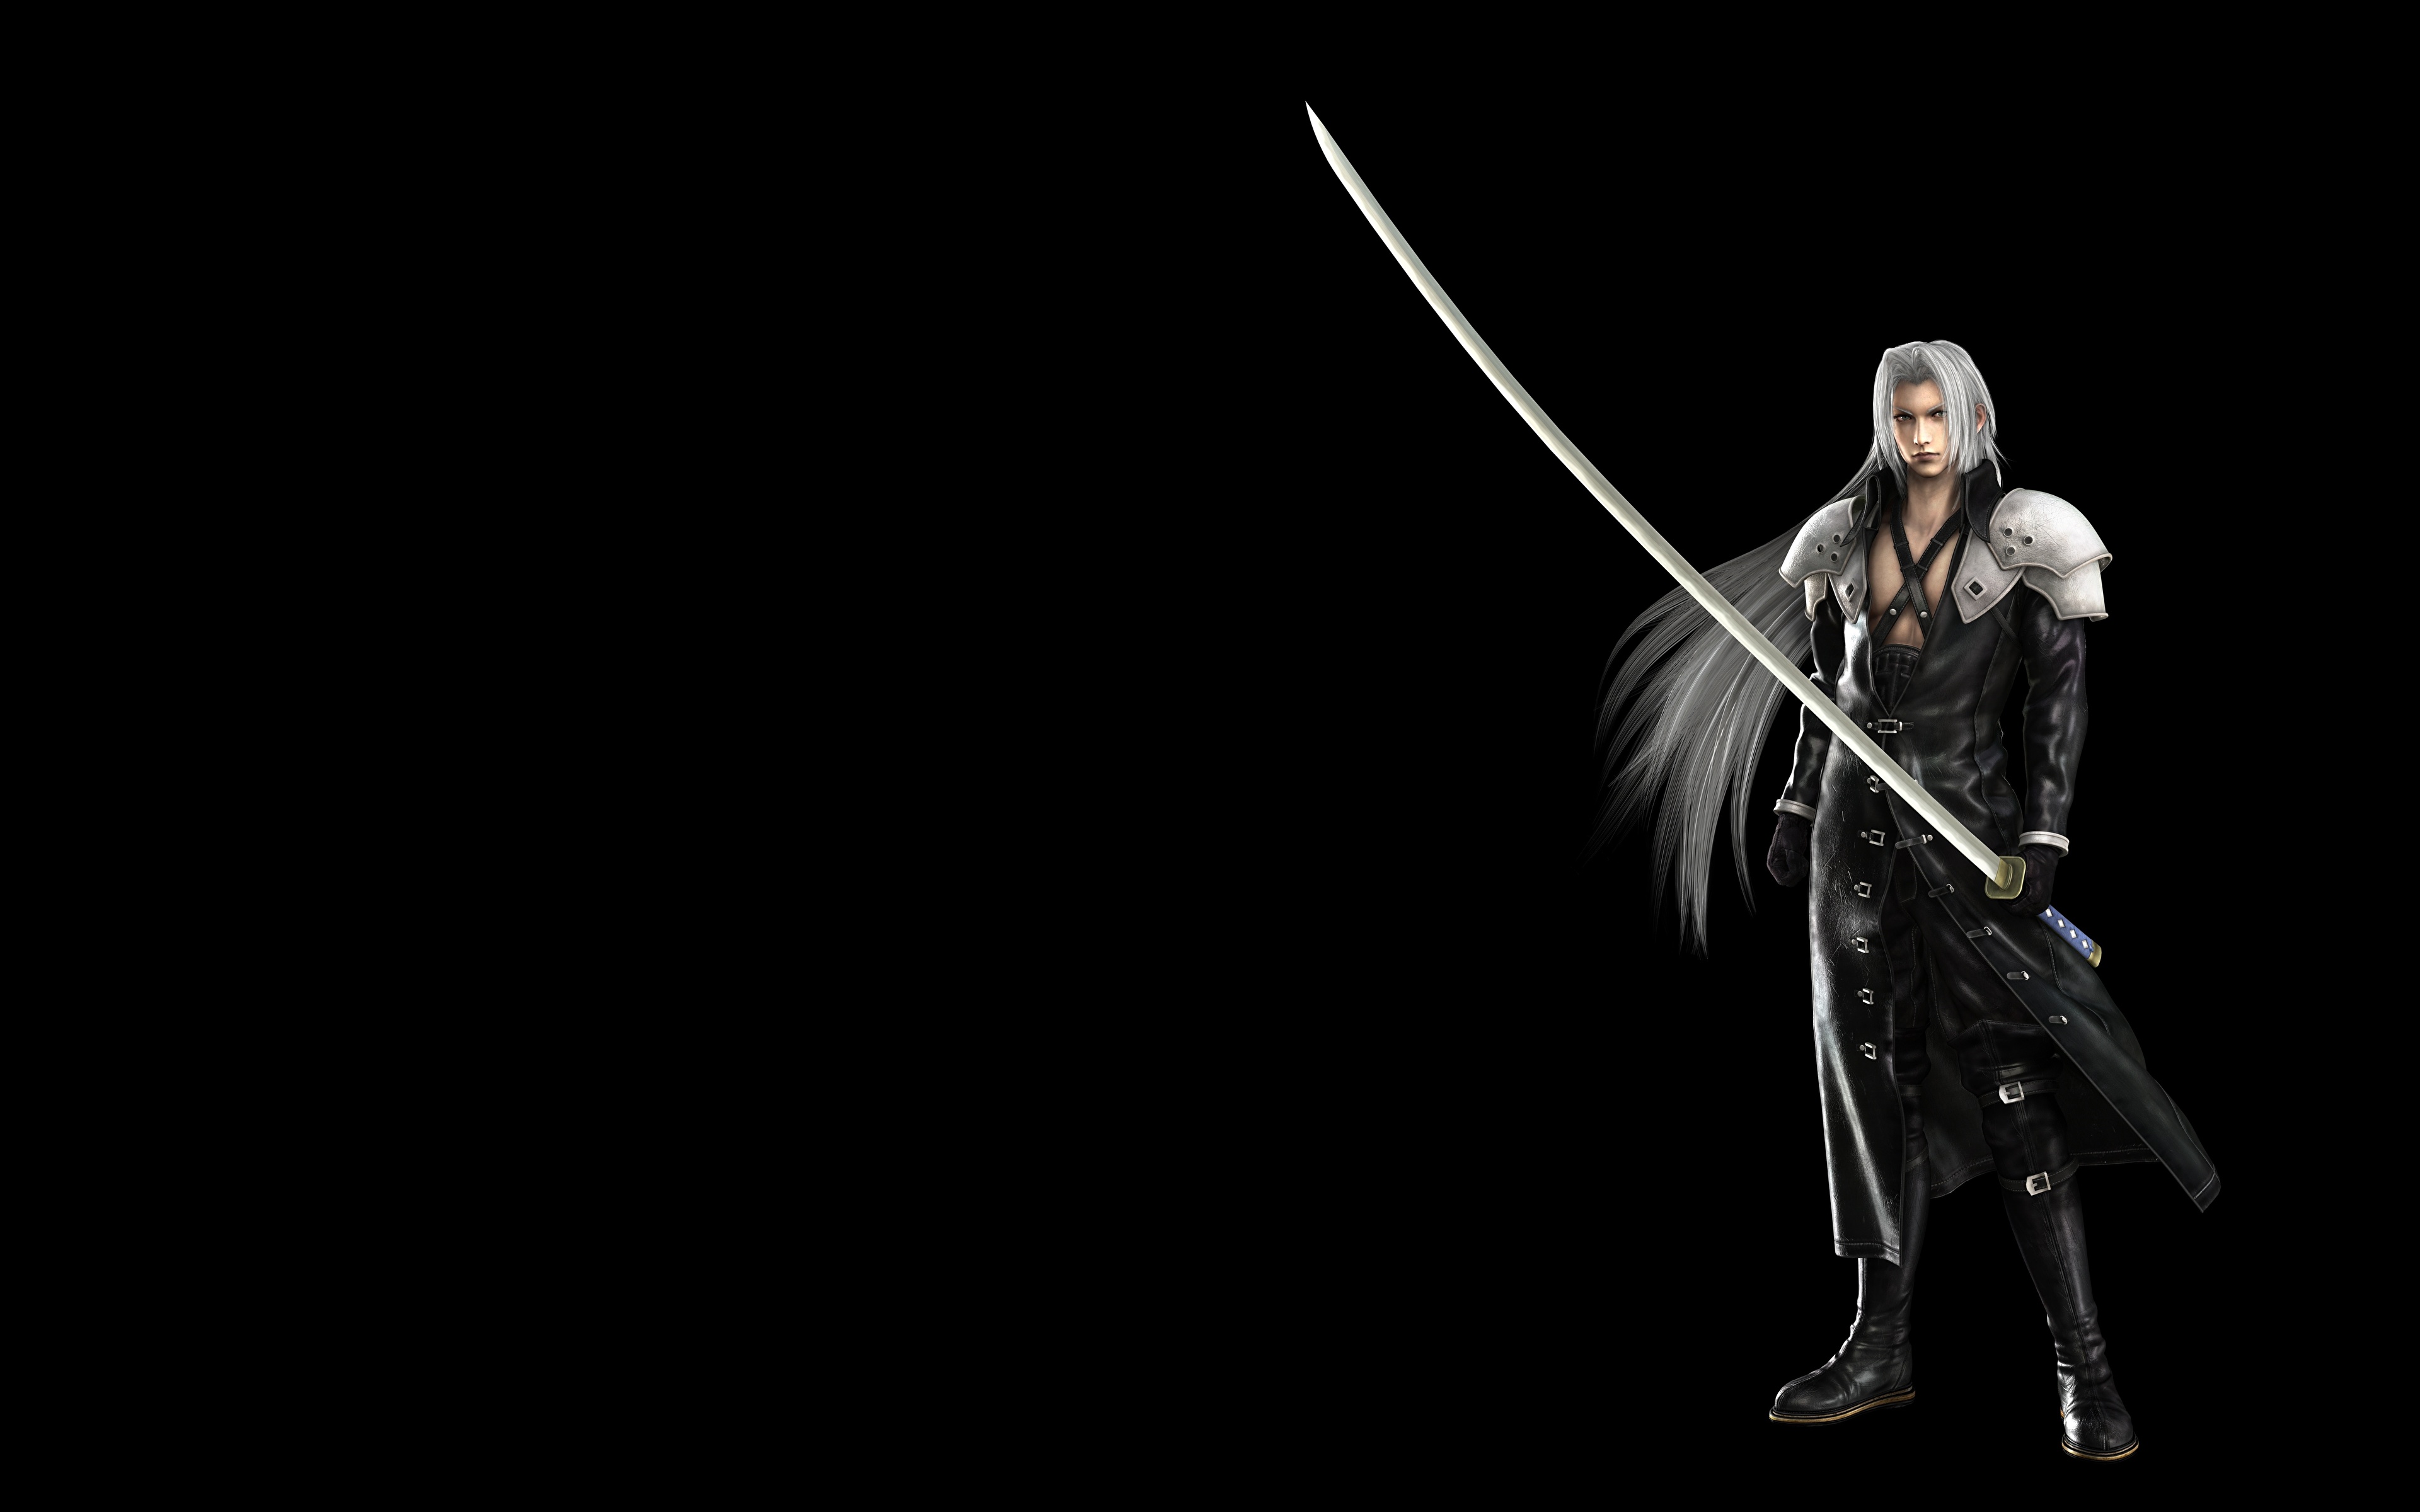 壁紙 3840x2400 ウォリアーズ ファイナルファンタジー Sephiroth サーベル 黒色背景 ゲーム 3dグラフィックス ダウンロード 写真